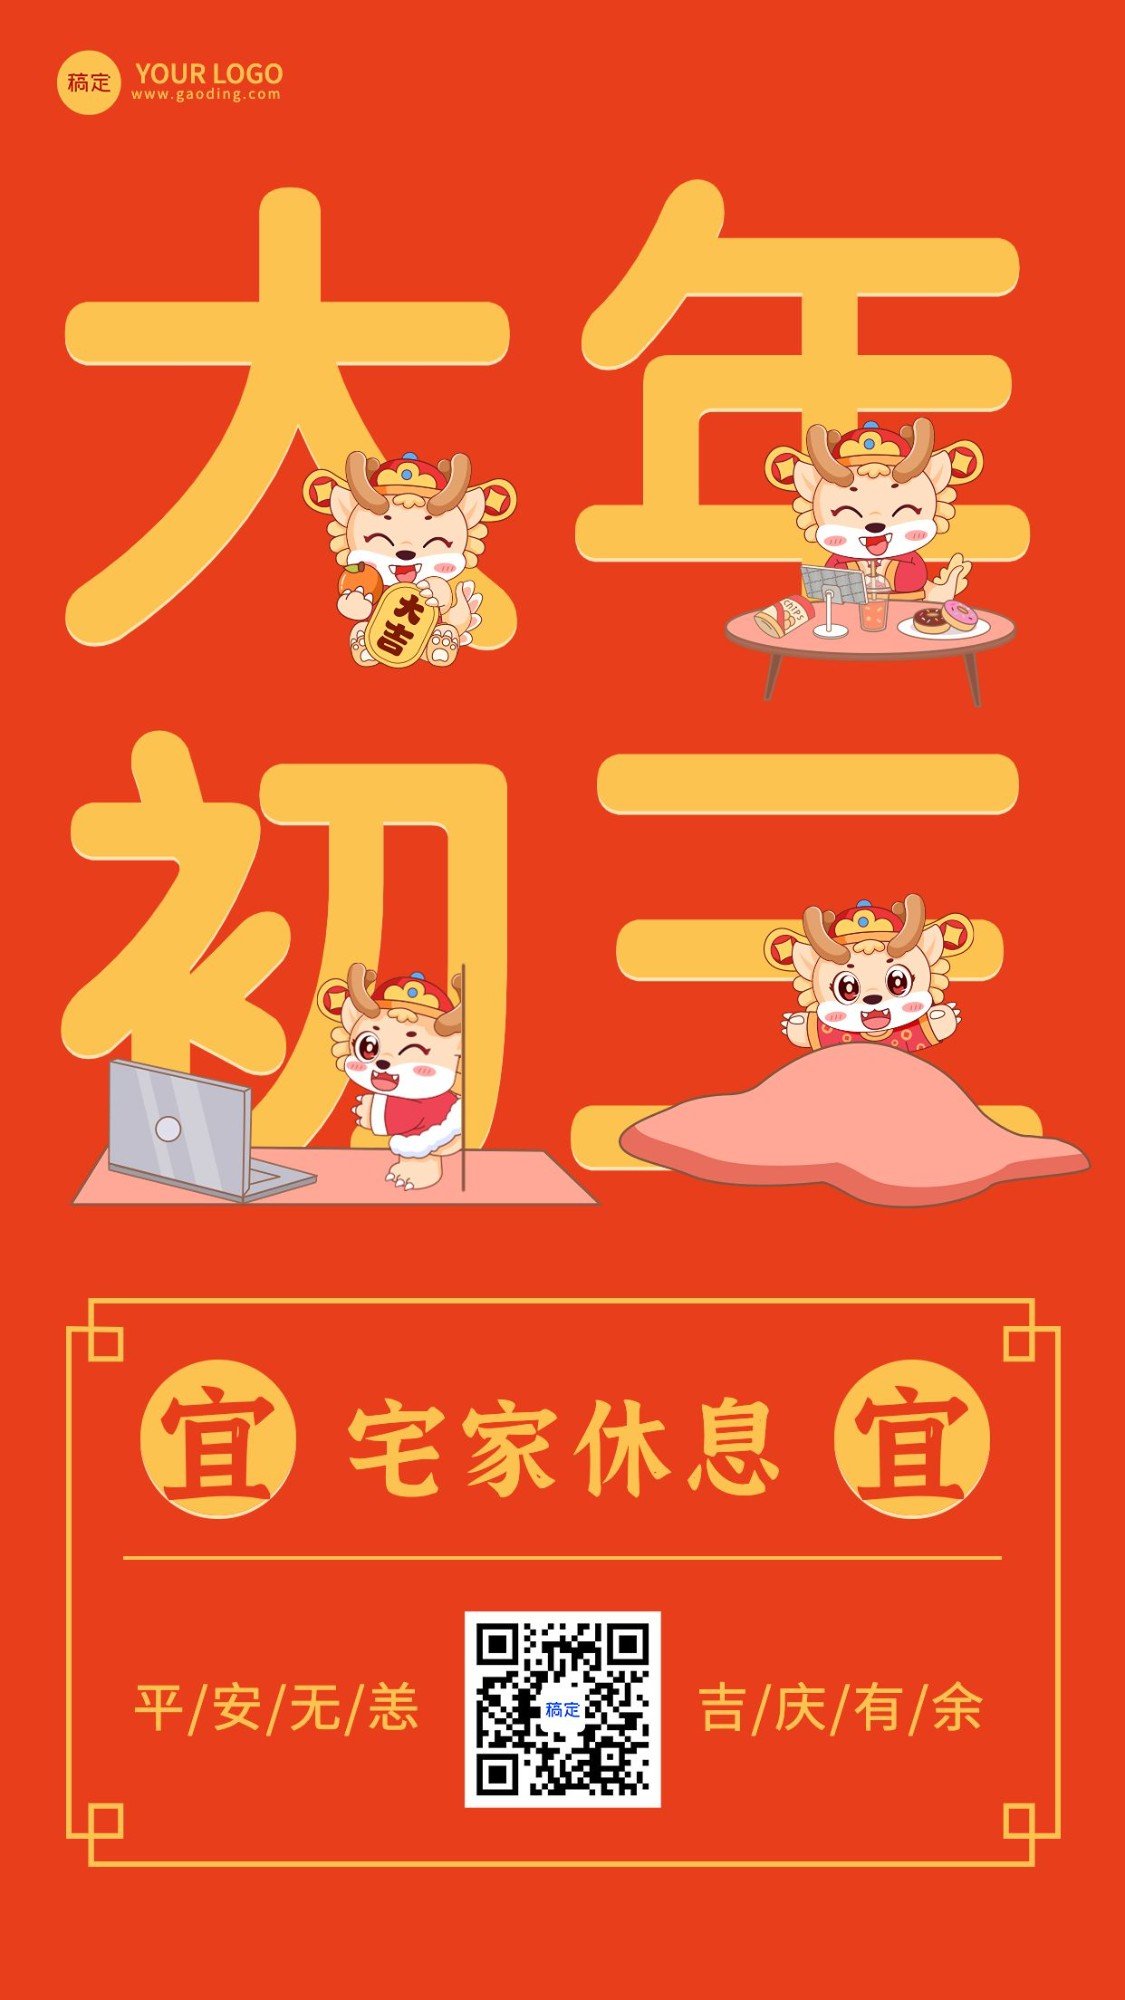 春节新年祝福正月初三手机海报预览效果